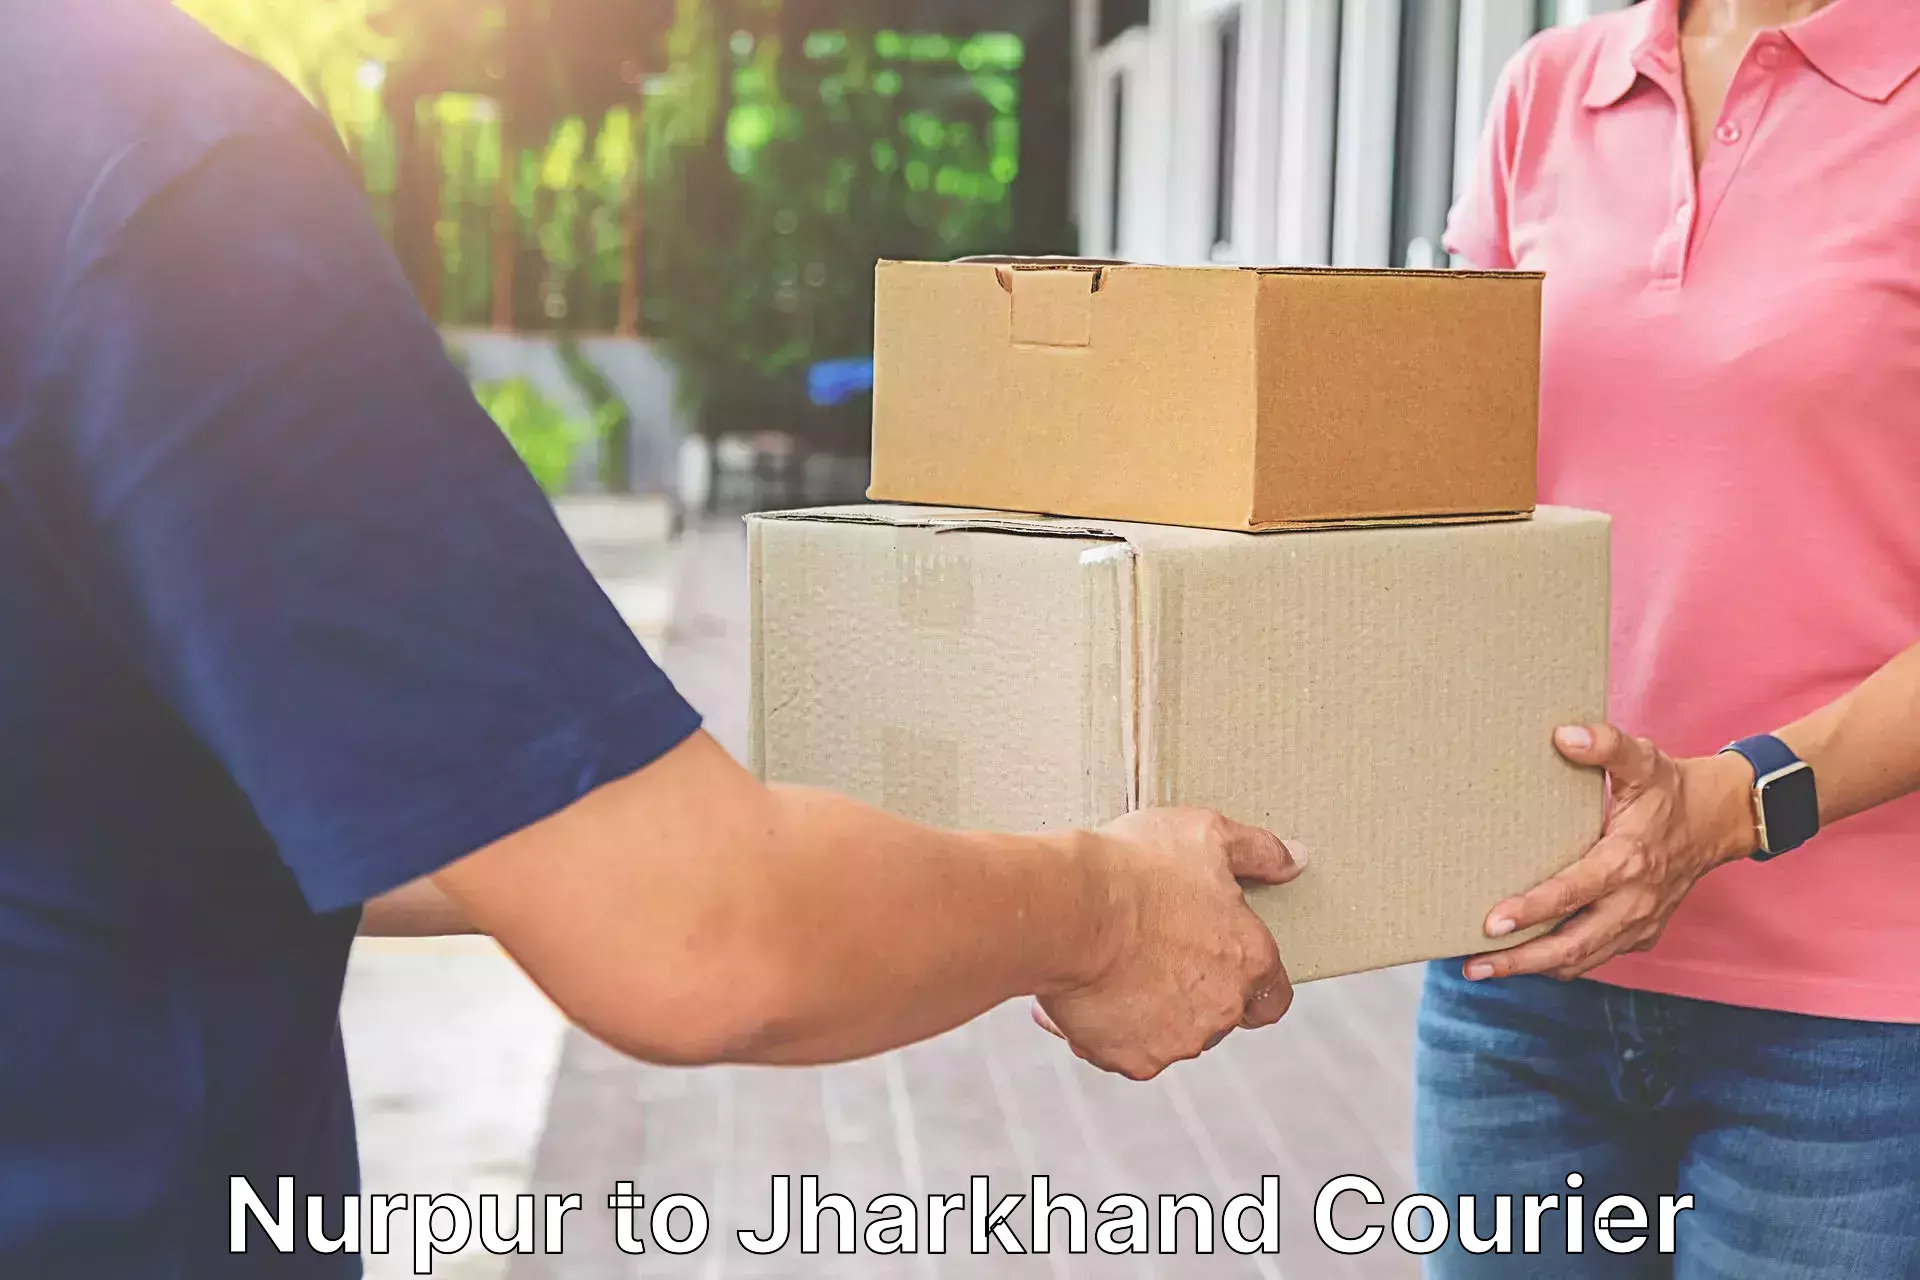 Cargo courier service Nurpur to Godabar Chatra